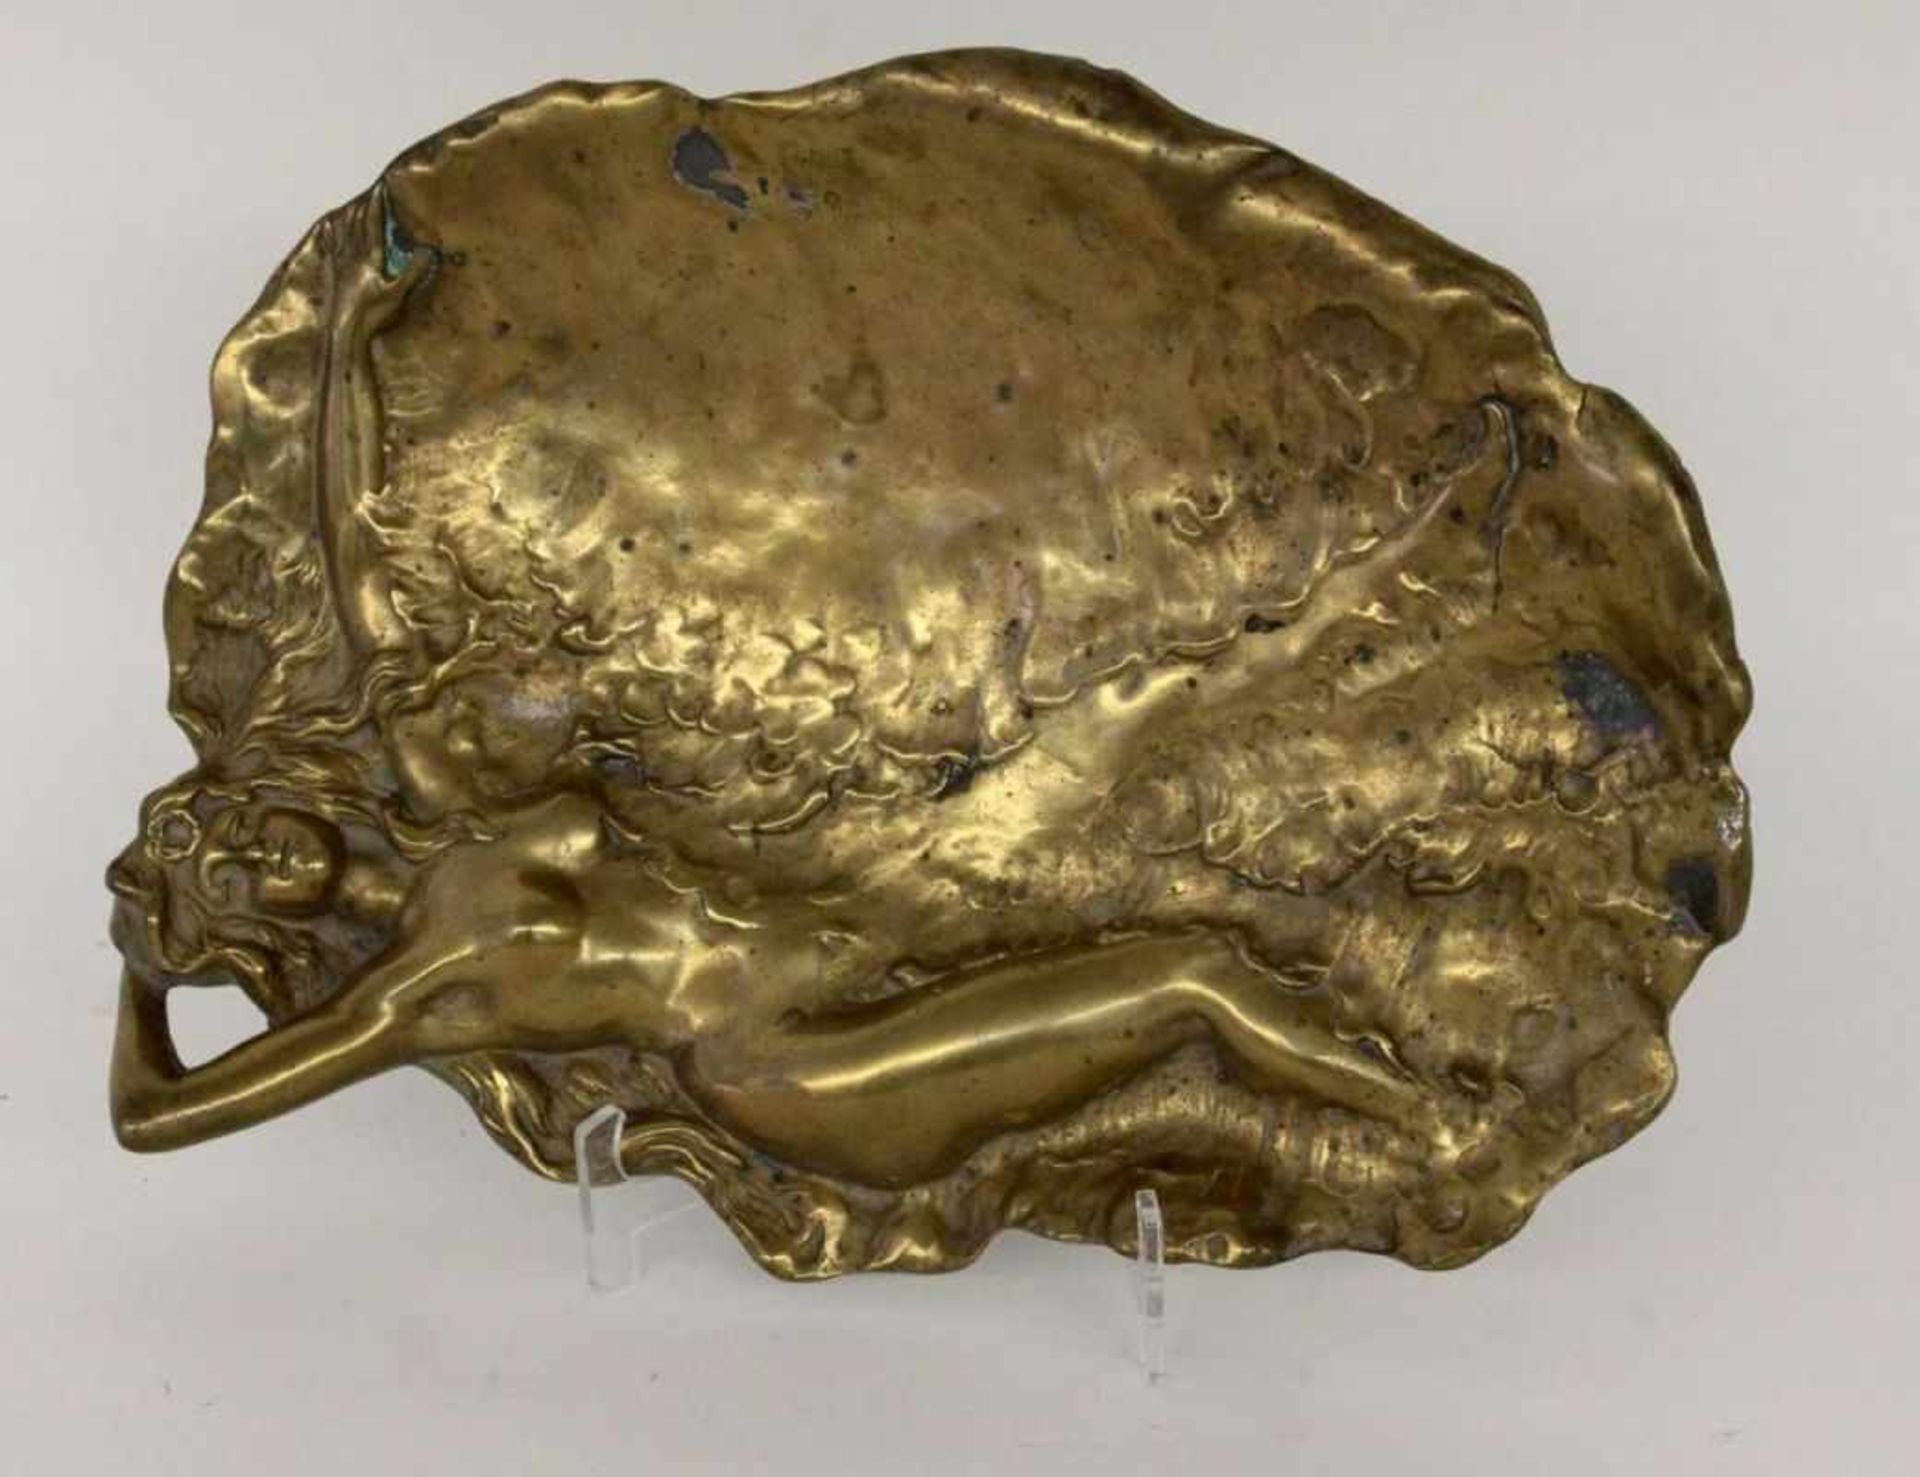 JUGENDSTIL SCHALE Um 1900 Bronze. In Form eines Sees mit liegender Nymphe. 31x22cm AN ART NOUVEAU